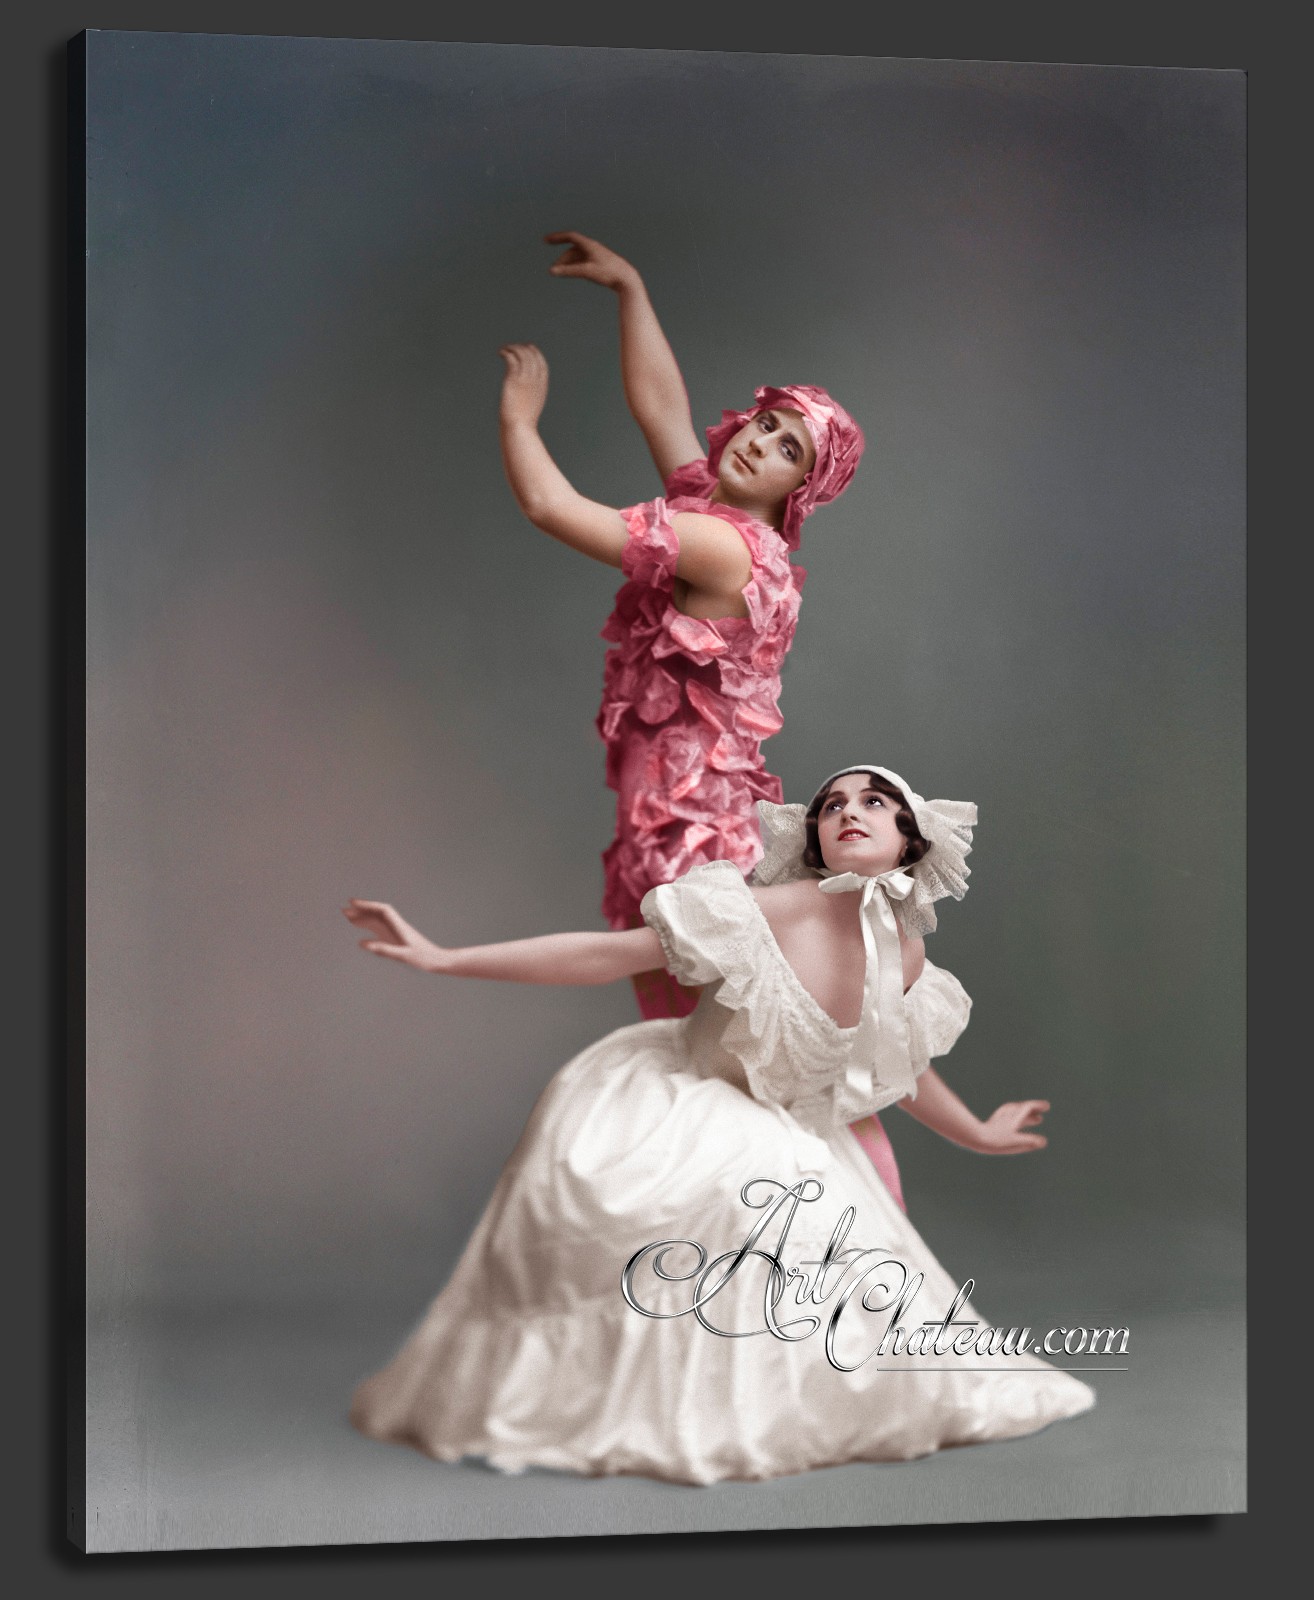 Art Nouveau Ballet Photograph, after Johannes Jaeger